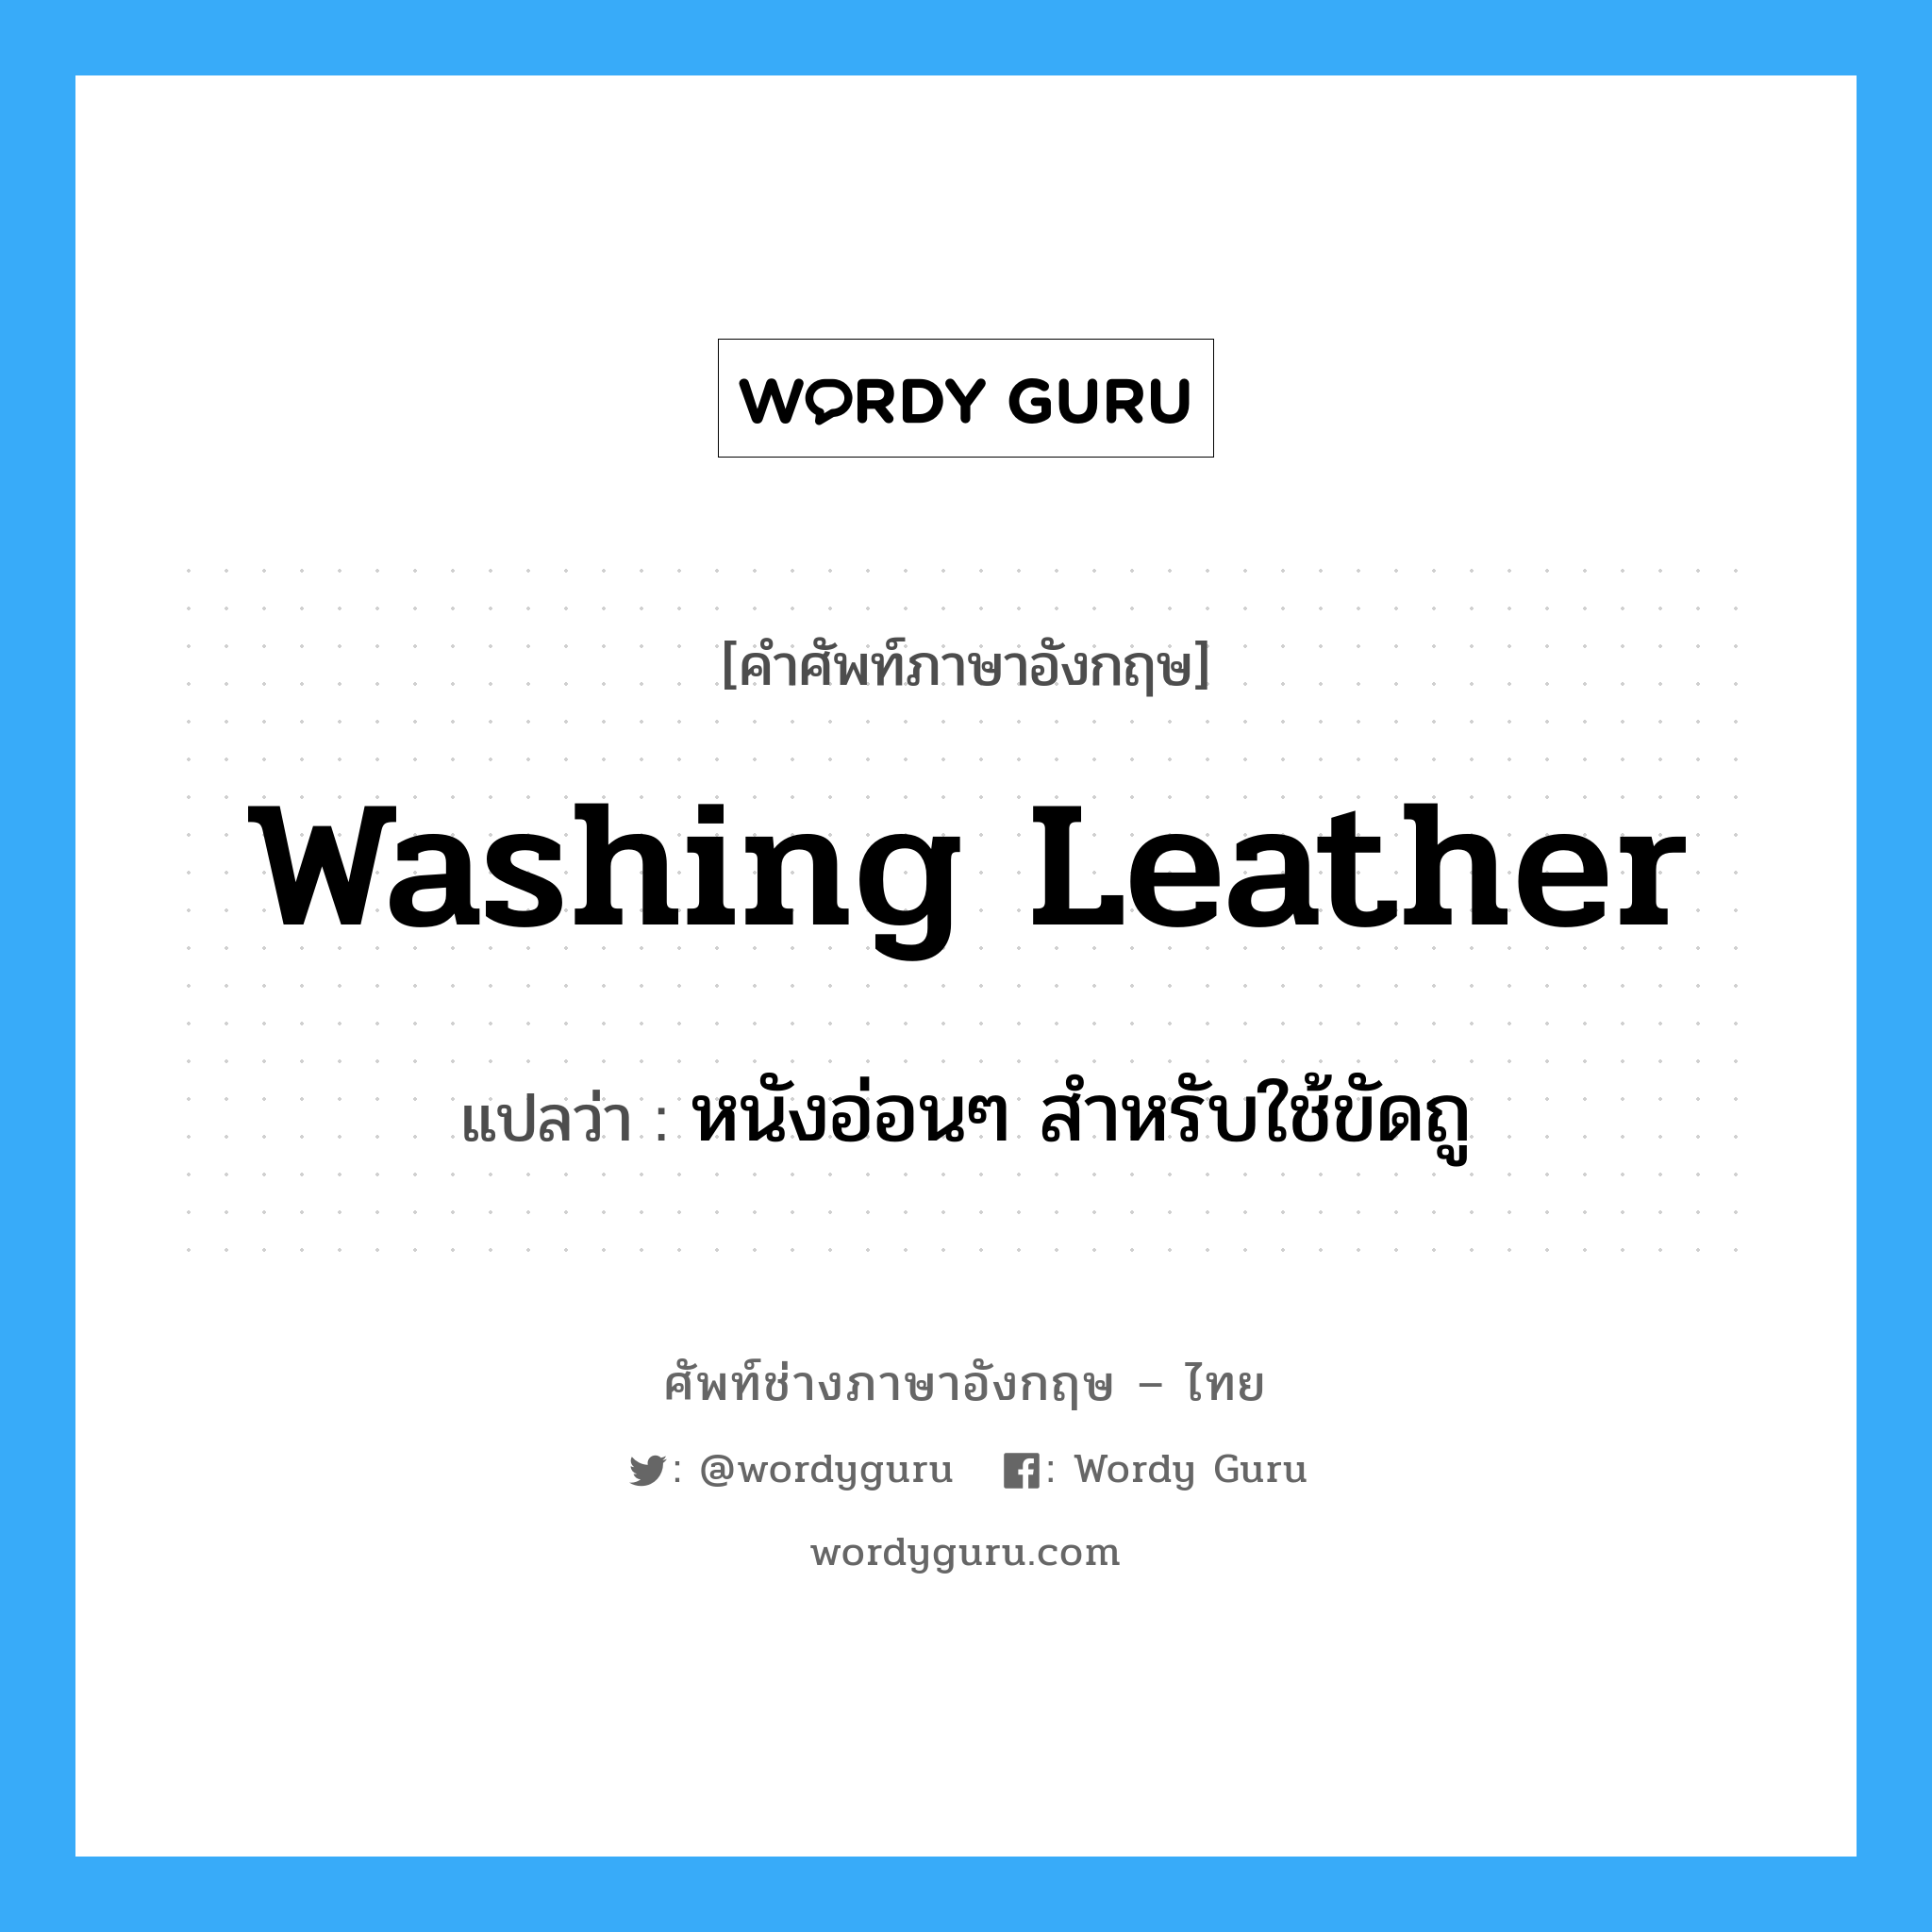 หนังอ่อนๆ สำหรับใช้ขัดถู ภาษาอังกฤษ?, คำศัพท์ช่างภาษาอังกฤษ - ไทย หนังอ่อนๆ สำหรับใช้ขัดถู คำศัพท์ภาษาอังกฤษ หนังอ่อนๆ สำหรับใช้ขัดถู แปลว่า washing leather